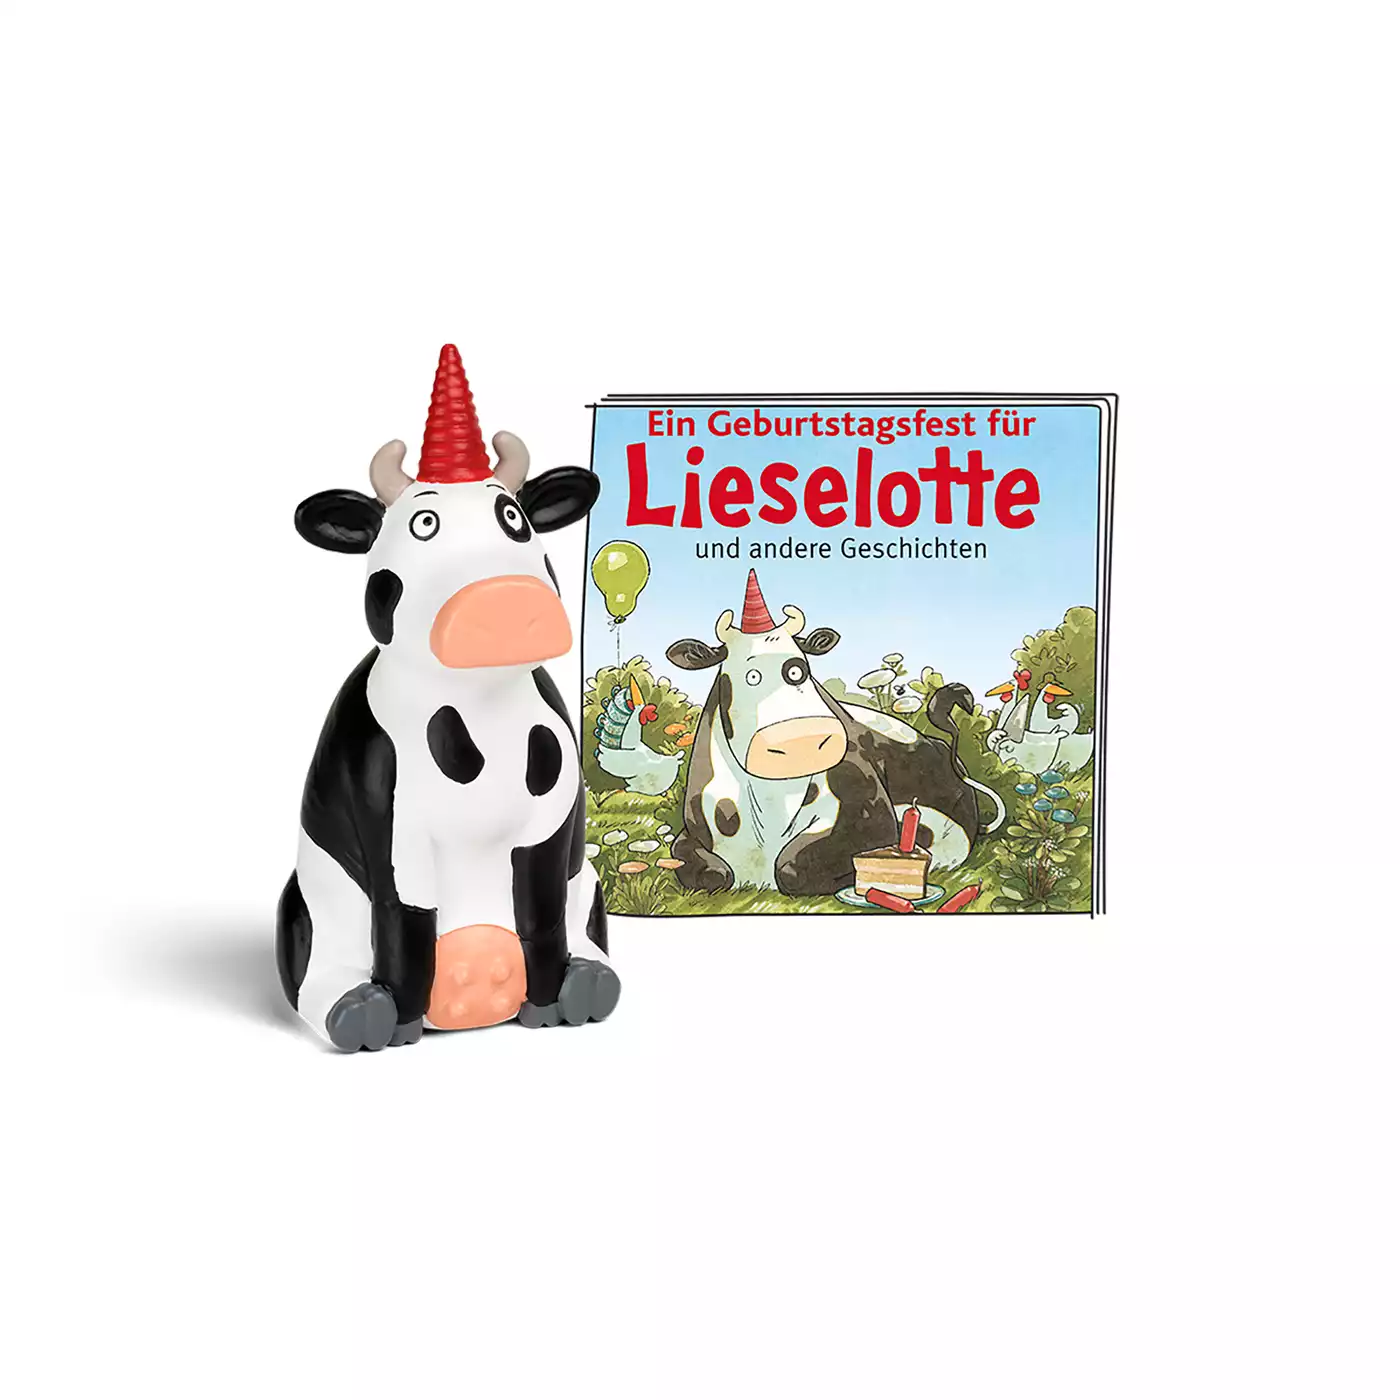 Ein Geburtstagsfest für Lieselotte und andere Geschichten tonies 2000575333204 3